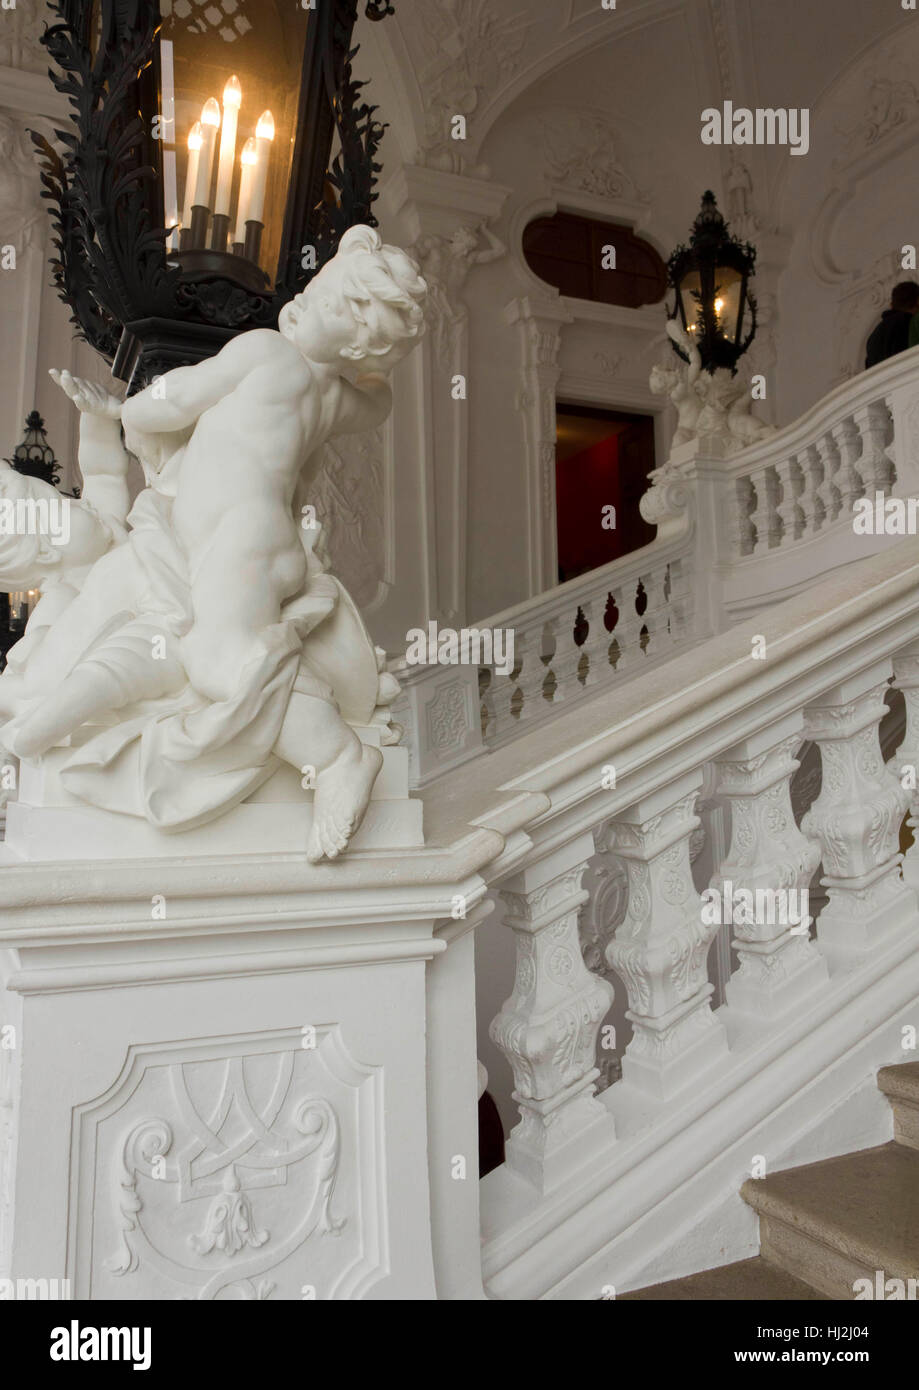 Vienne, Autriche - 1 janvier 2016 : Architectural de près de l'escalier blanc de Schloss Belvedere à Vienne, avec une statue en premier plan Banque D'Images